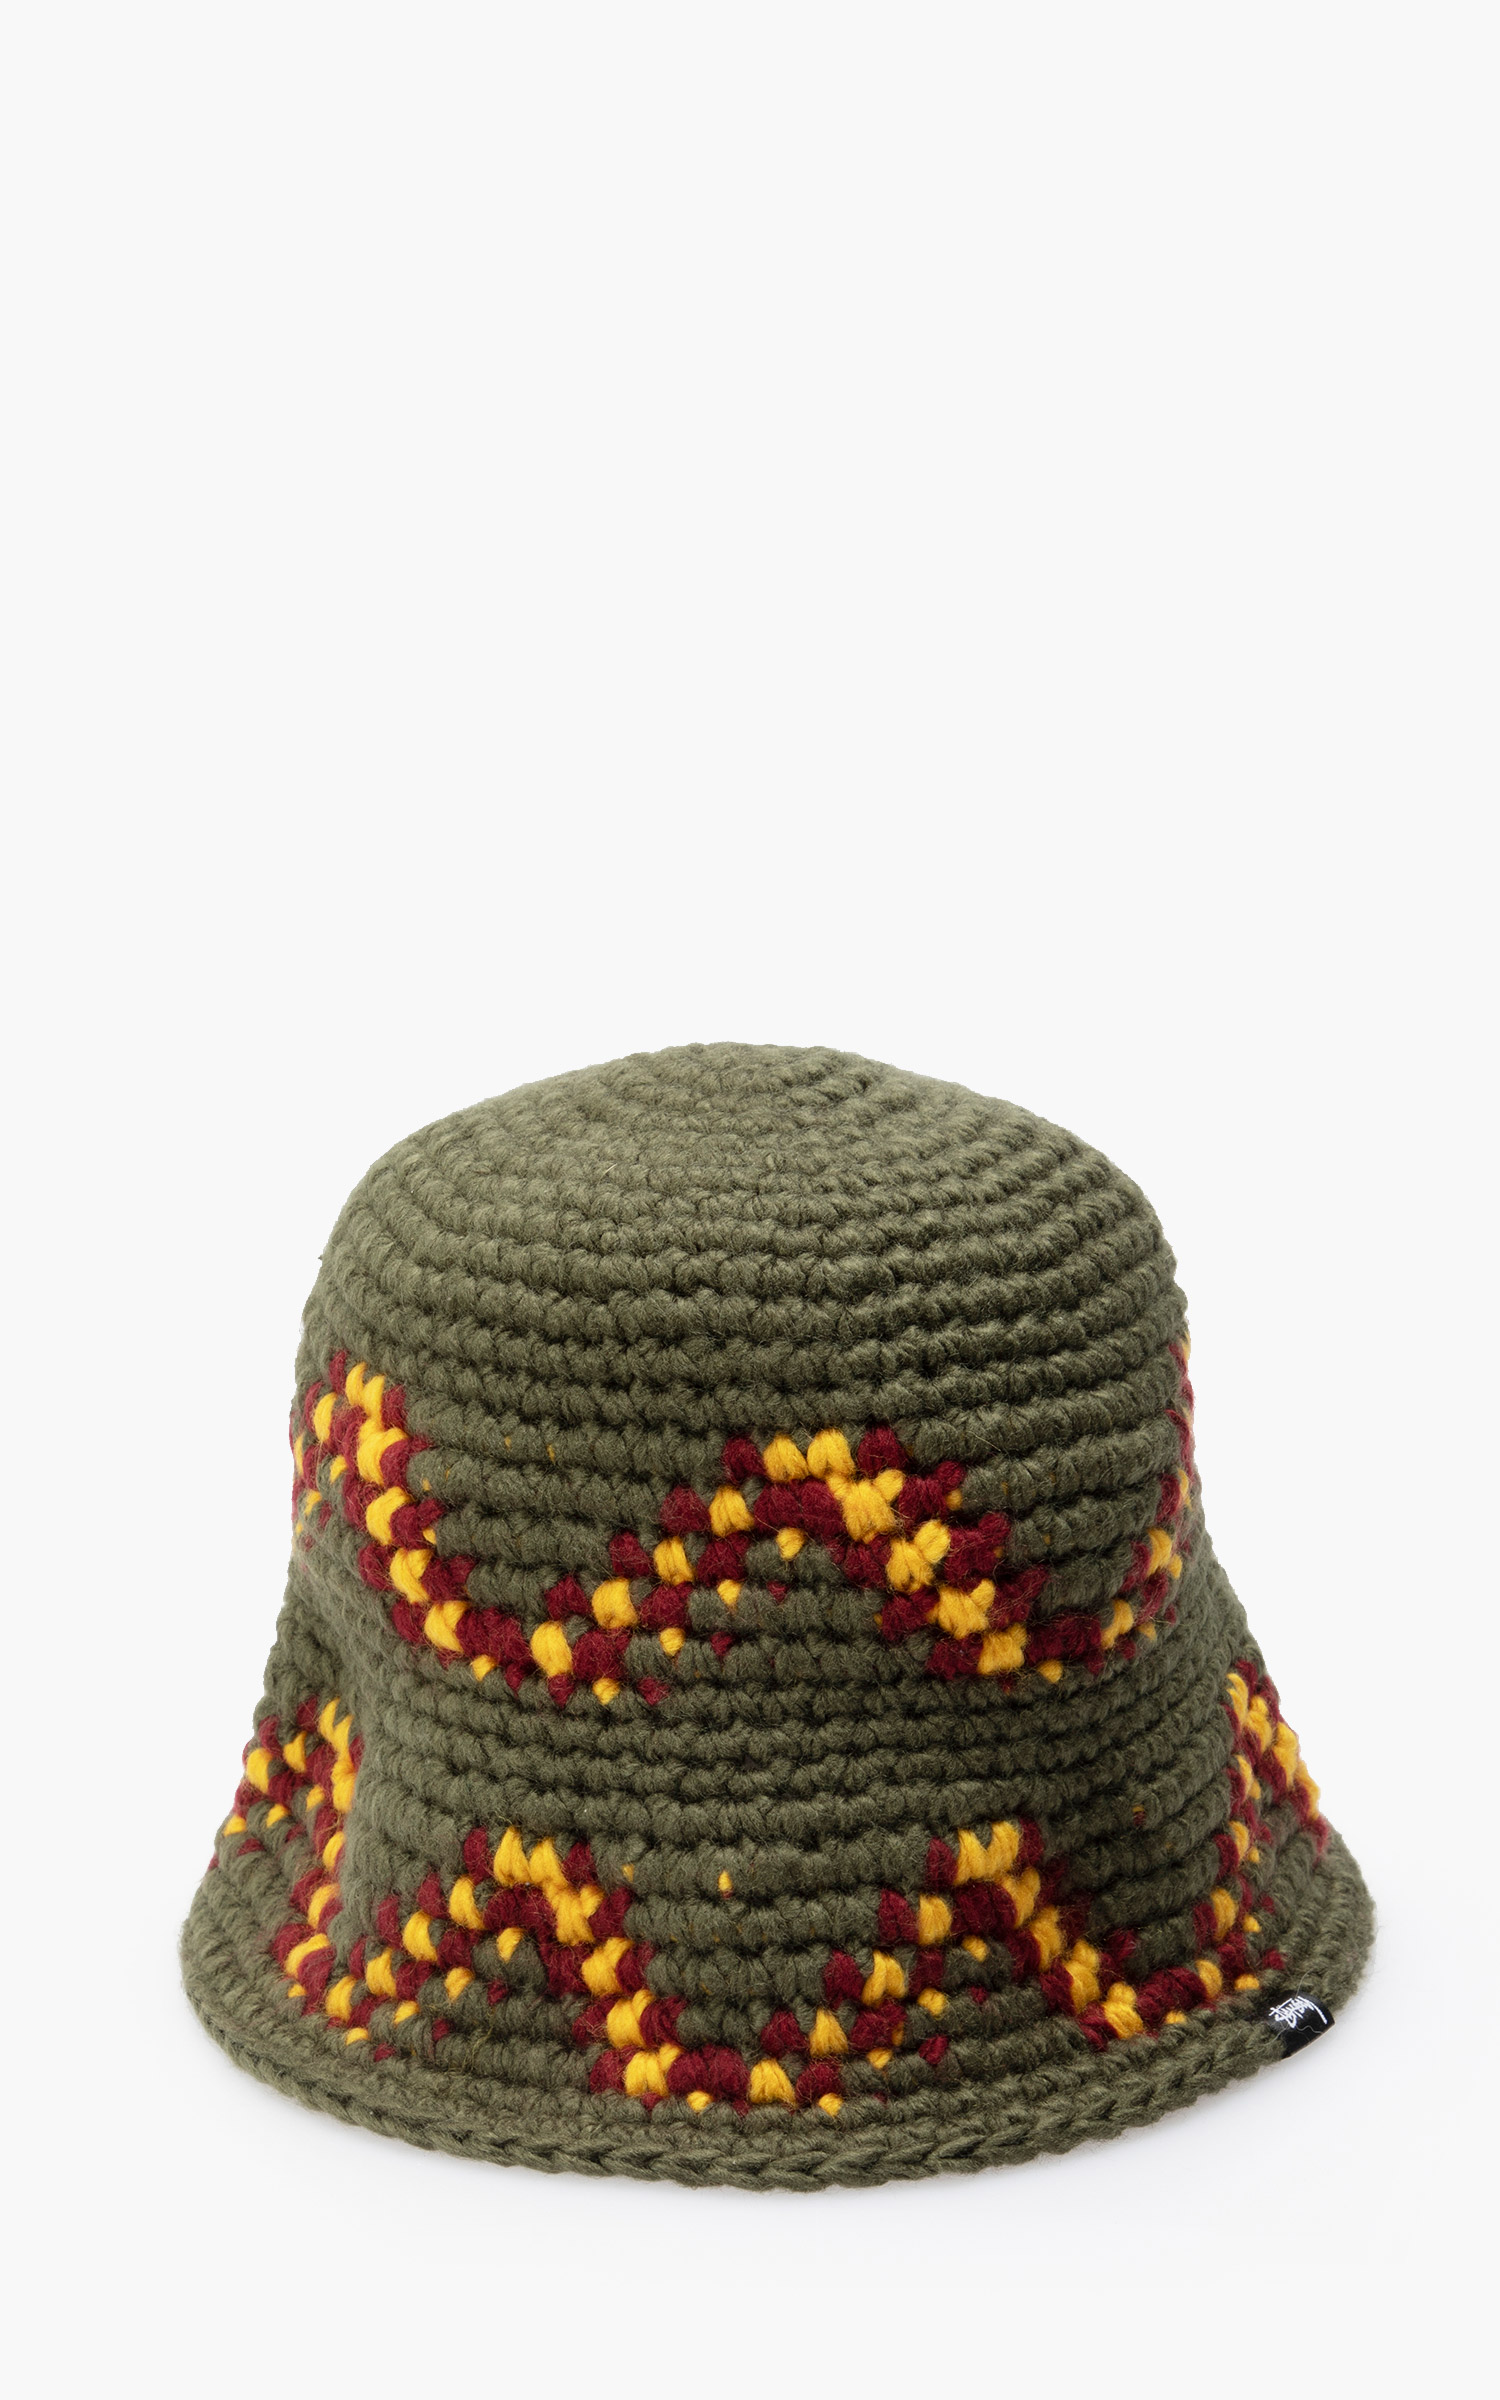 Stüssy Giza Knit Bucket Hat Olive